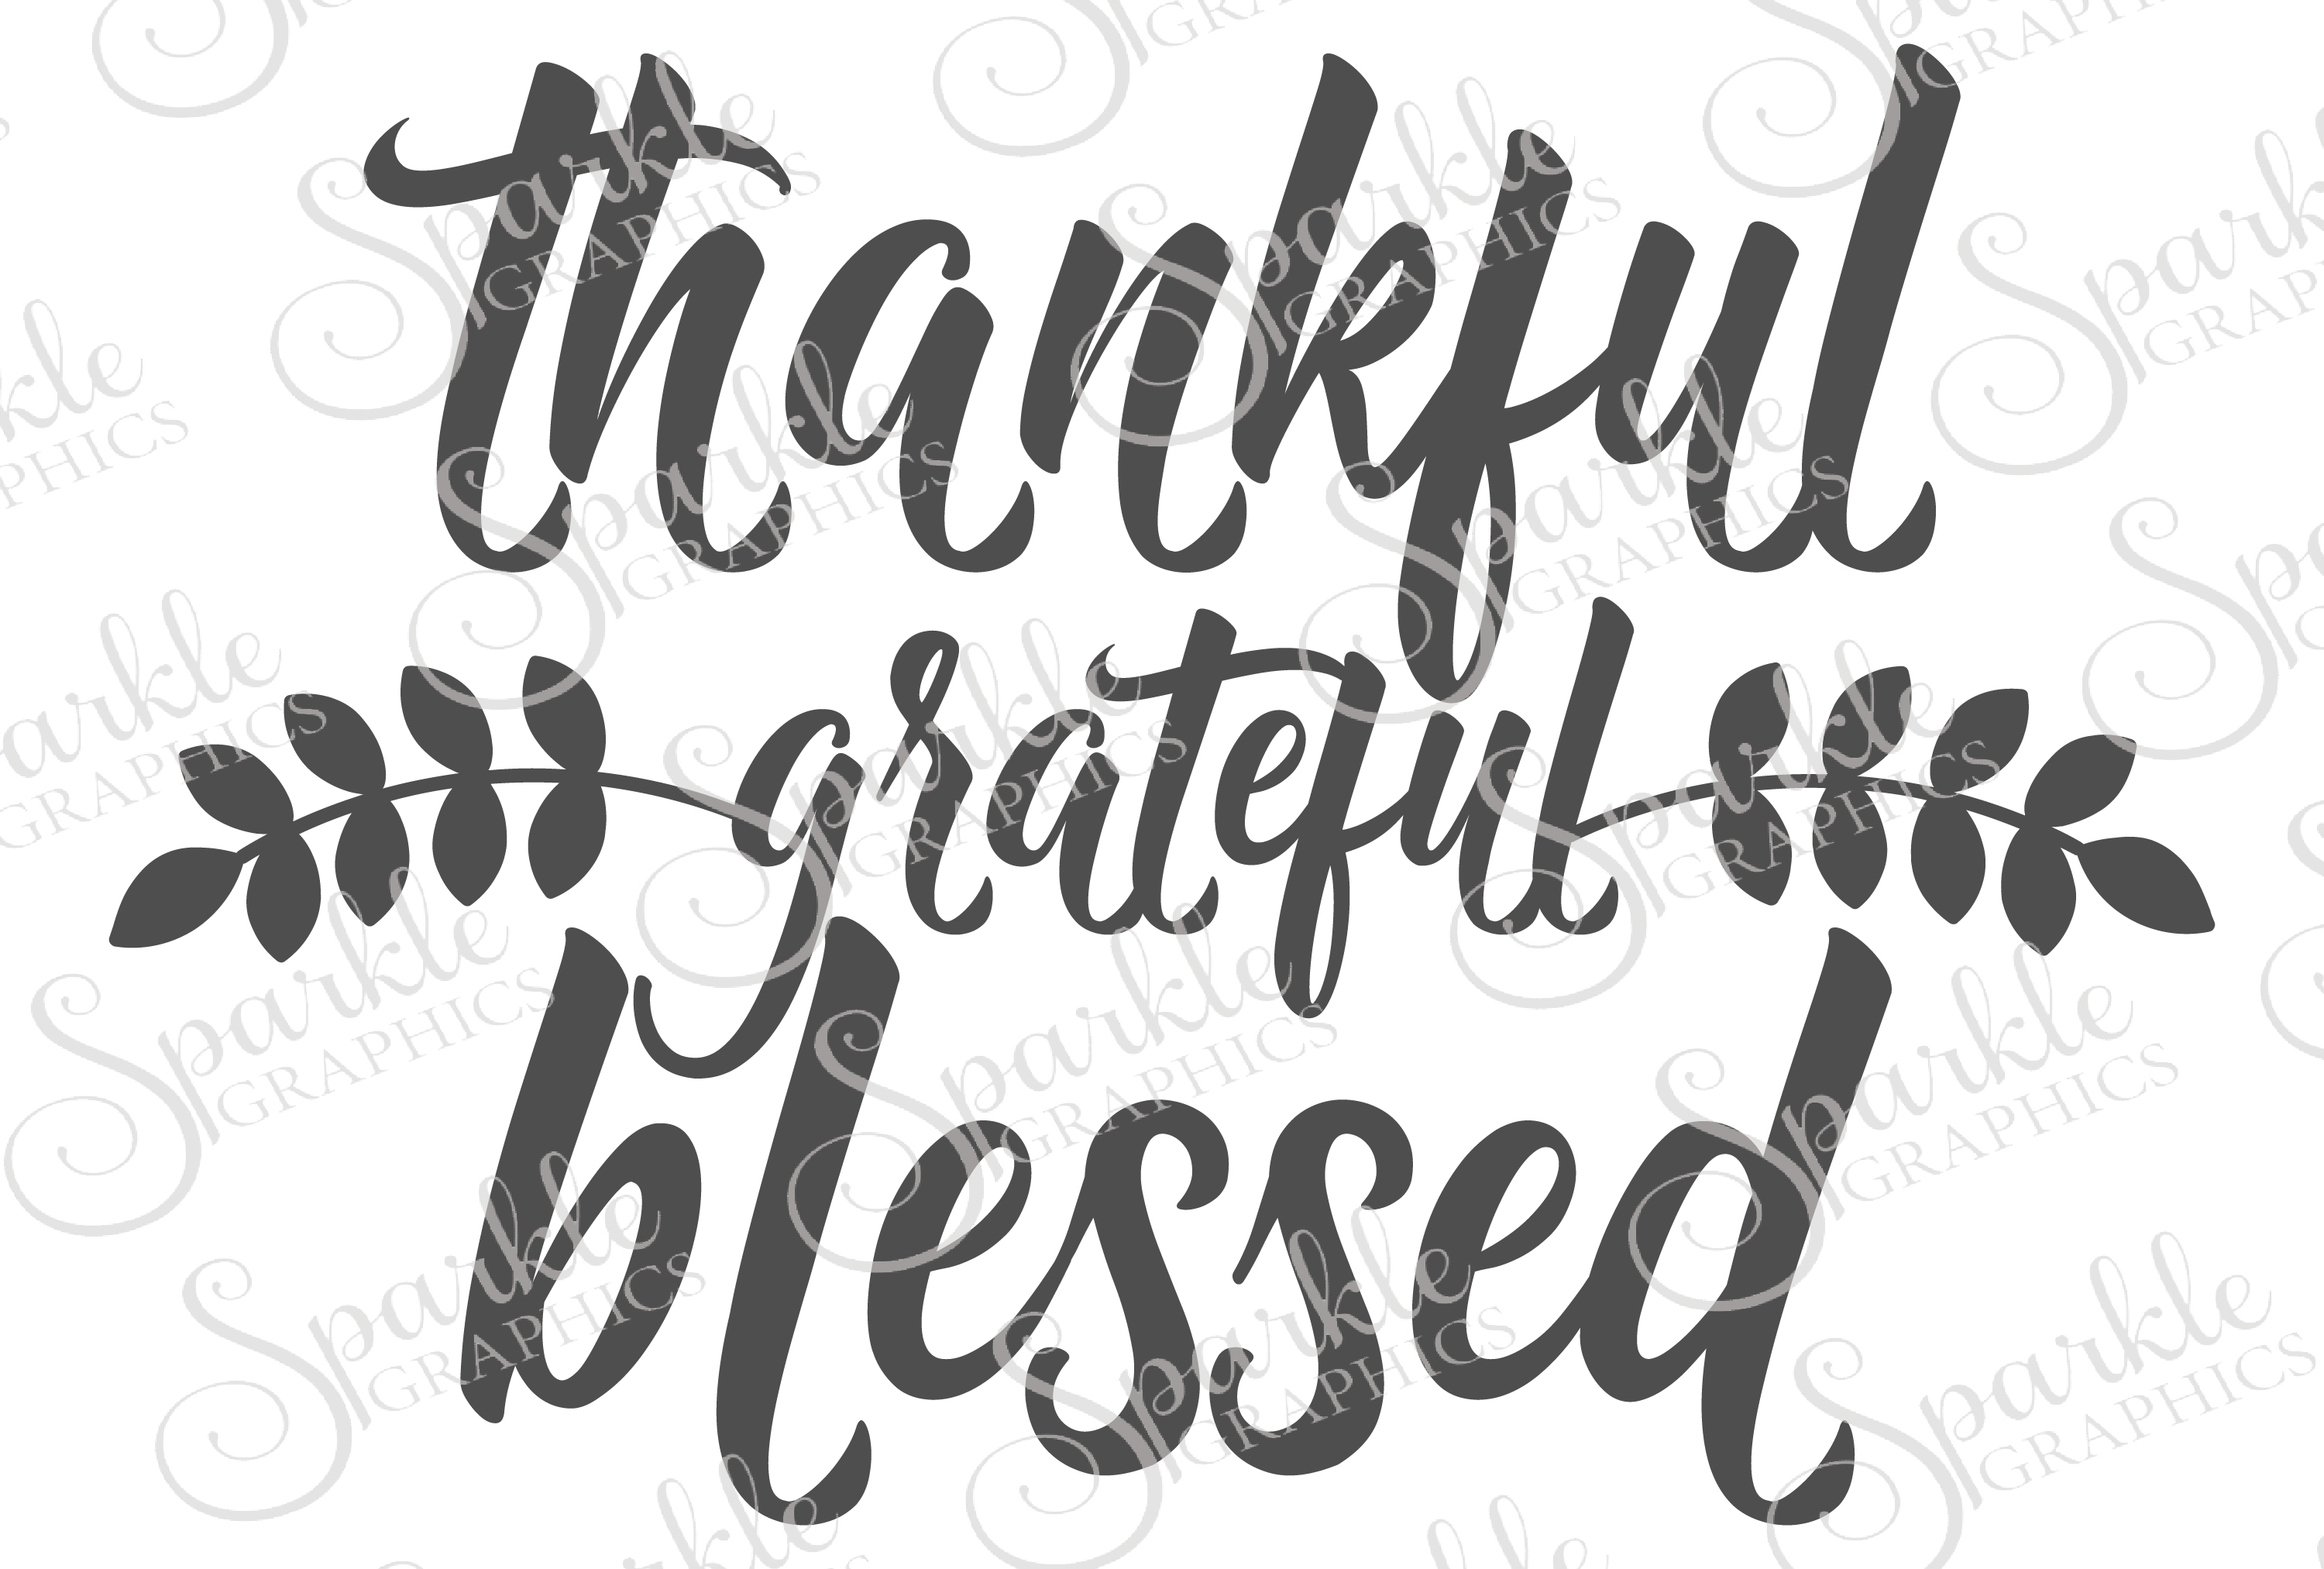 Thankful Grateful Blessed Cut File Set | Design Bundles